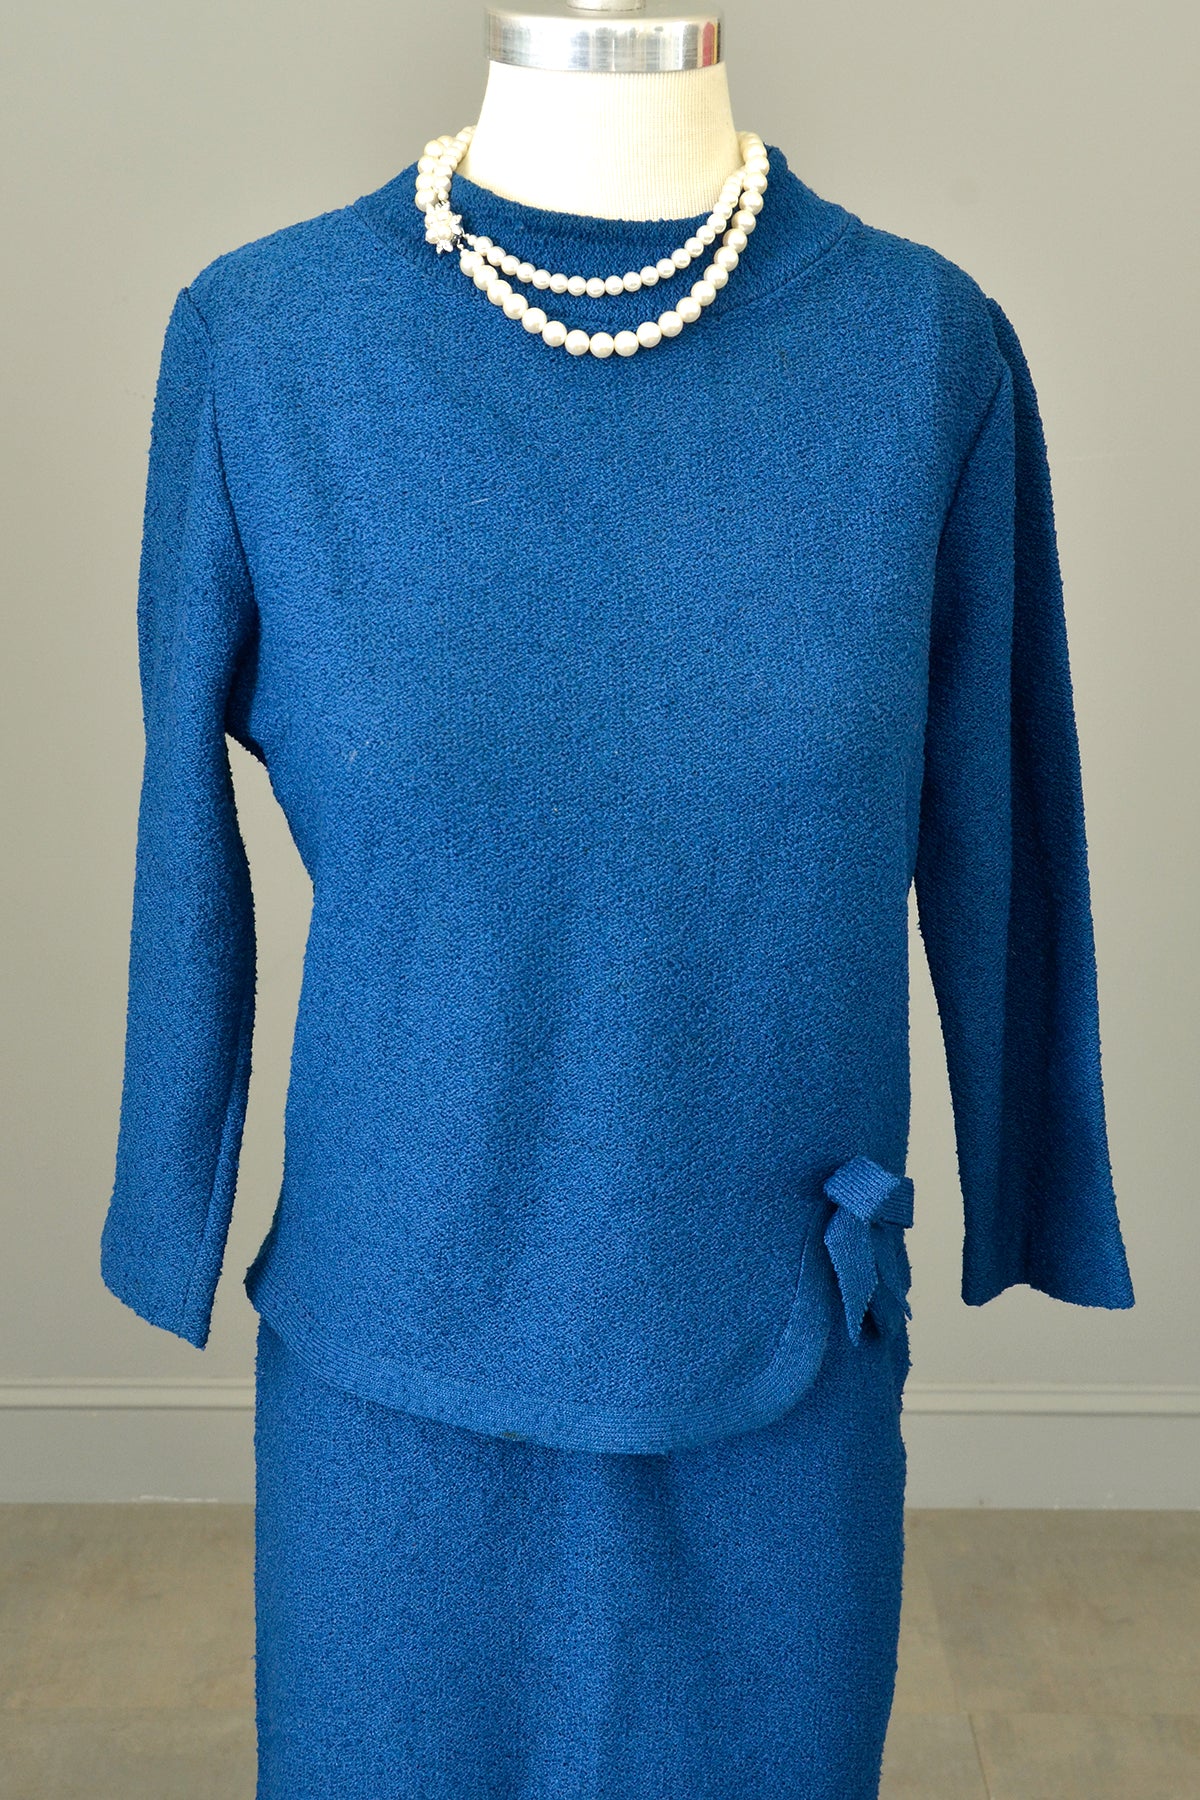 1950s Blue Textured Knit Top Sweater Skirt Set